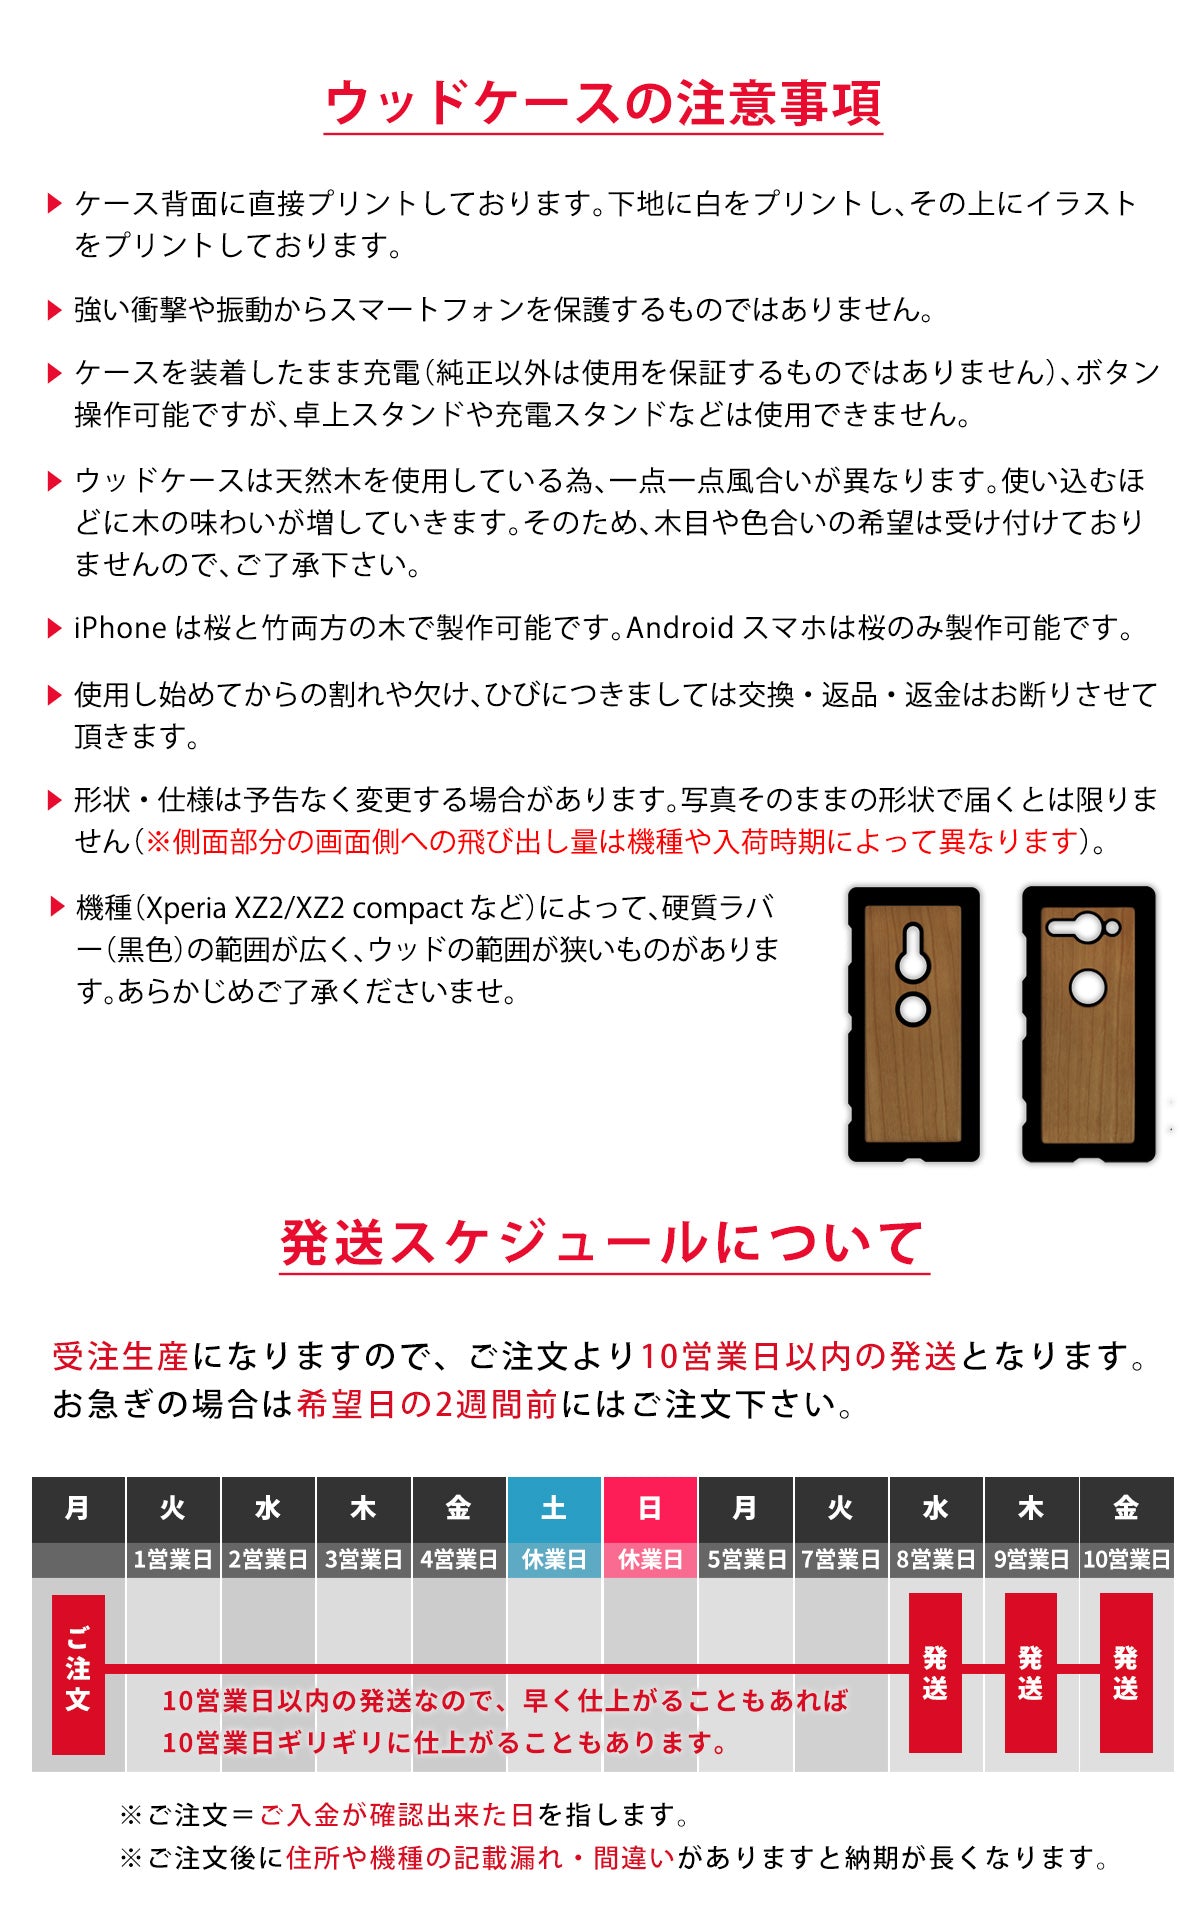 ウッドケース iPhone 12/11/XR/Xs/X/SE2/8/7 木製ケース たぬき タヌキ 名入れ